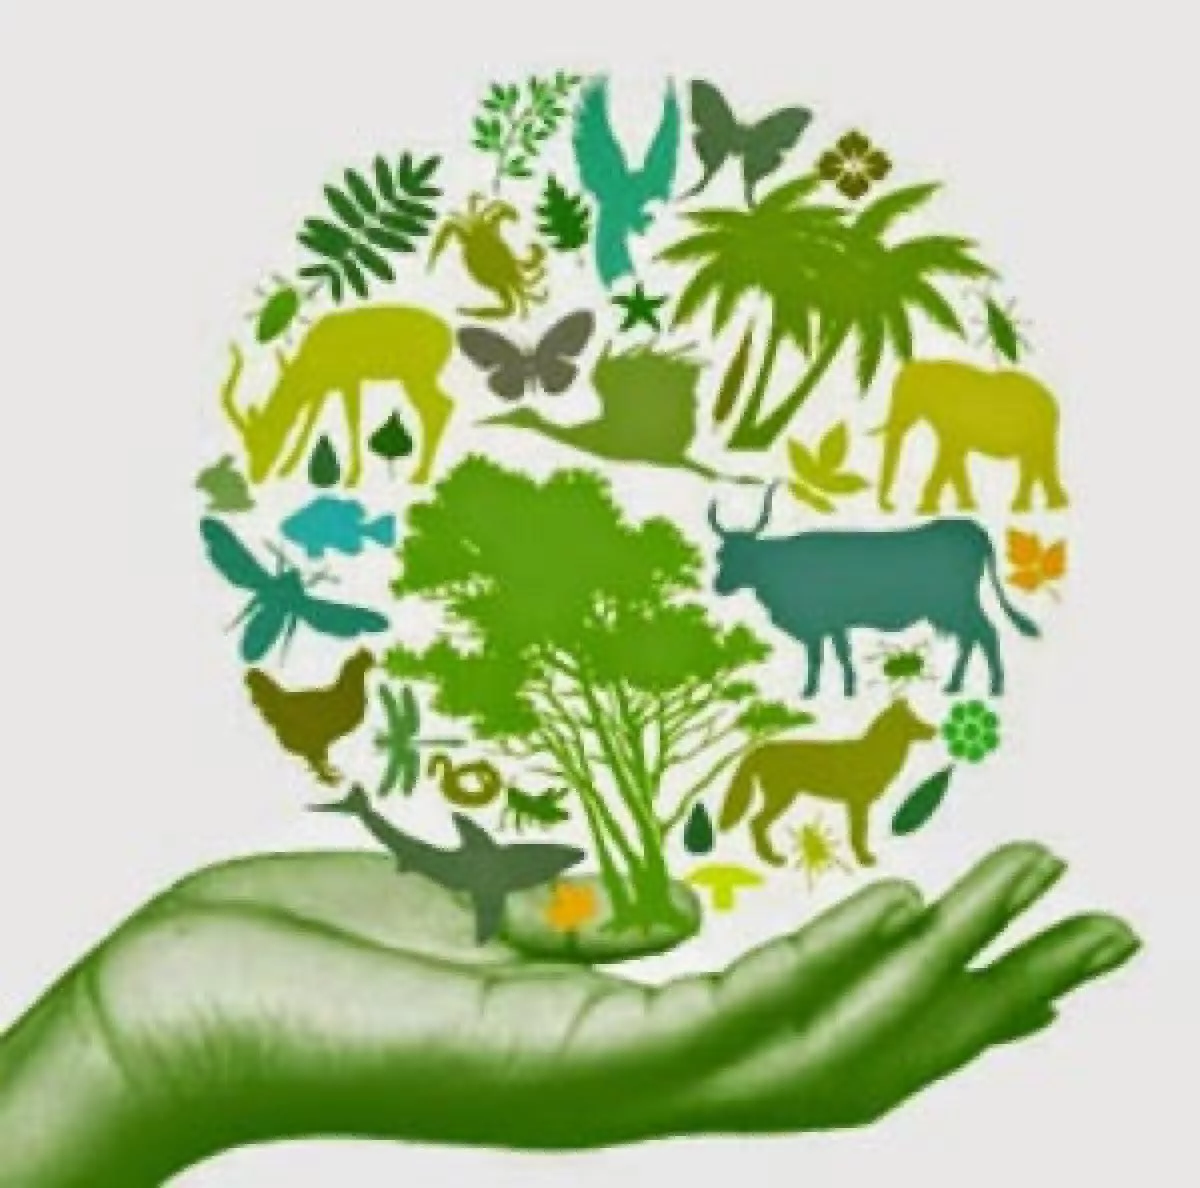 Eco animal. Сохранение биоразнообразия. Биологическое разнообразие. Биоразнообразие это в экологии. Охрана биоразнообразия.